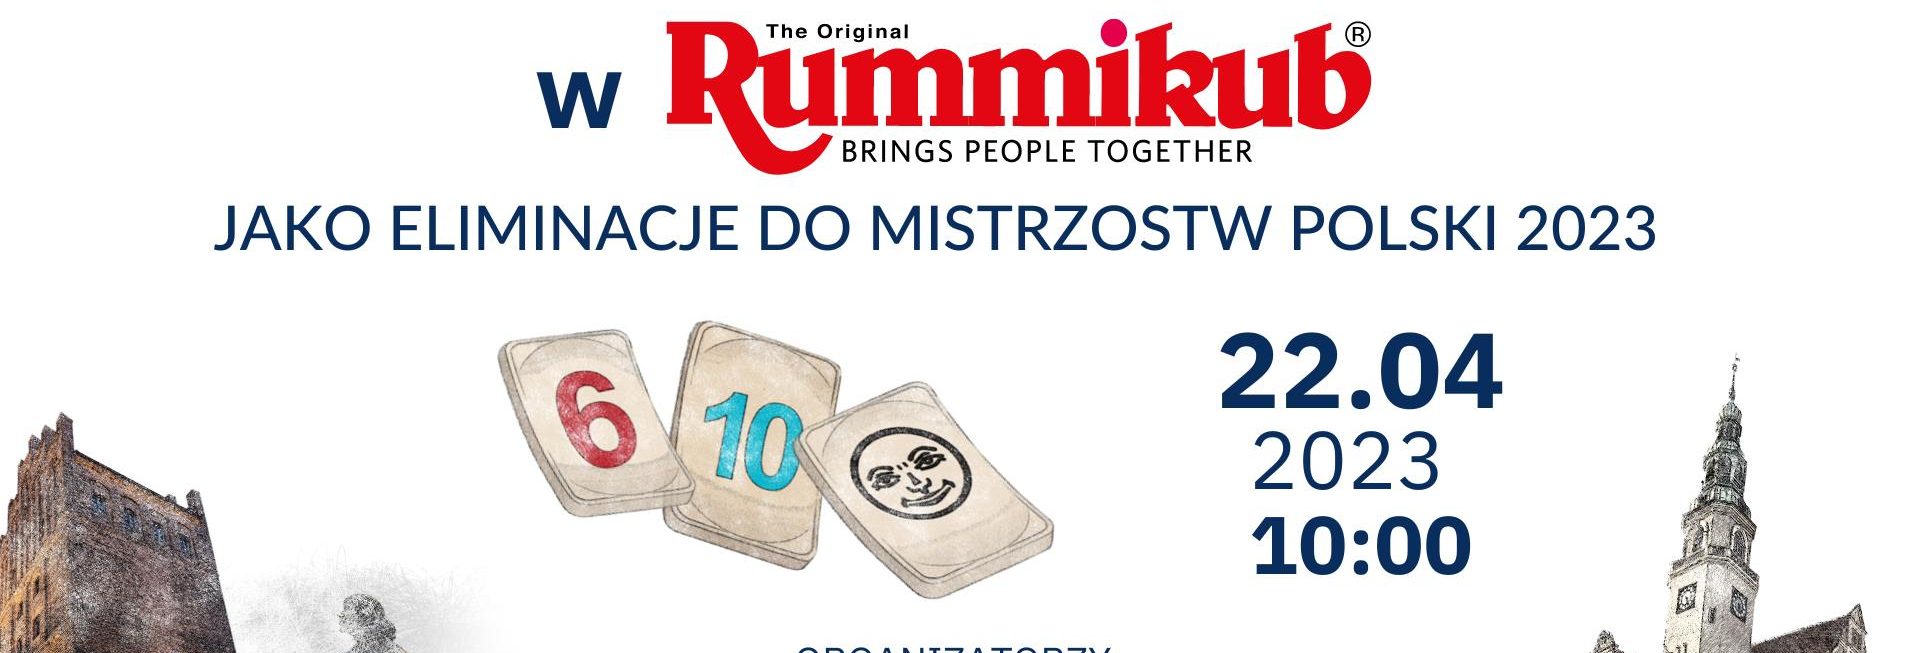 Plakat zapraszający w sobotę 22 kwietnia 2023 r. do Kuźni Społecznej w Olsztynie na Mistrzostwa Olsztyna w Rummikub Olsztyn 2023.